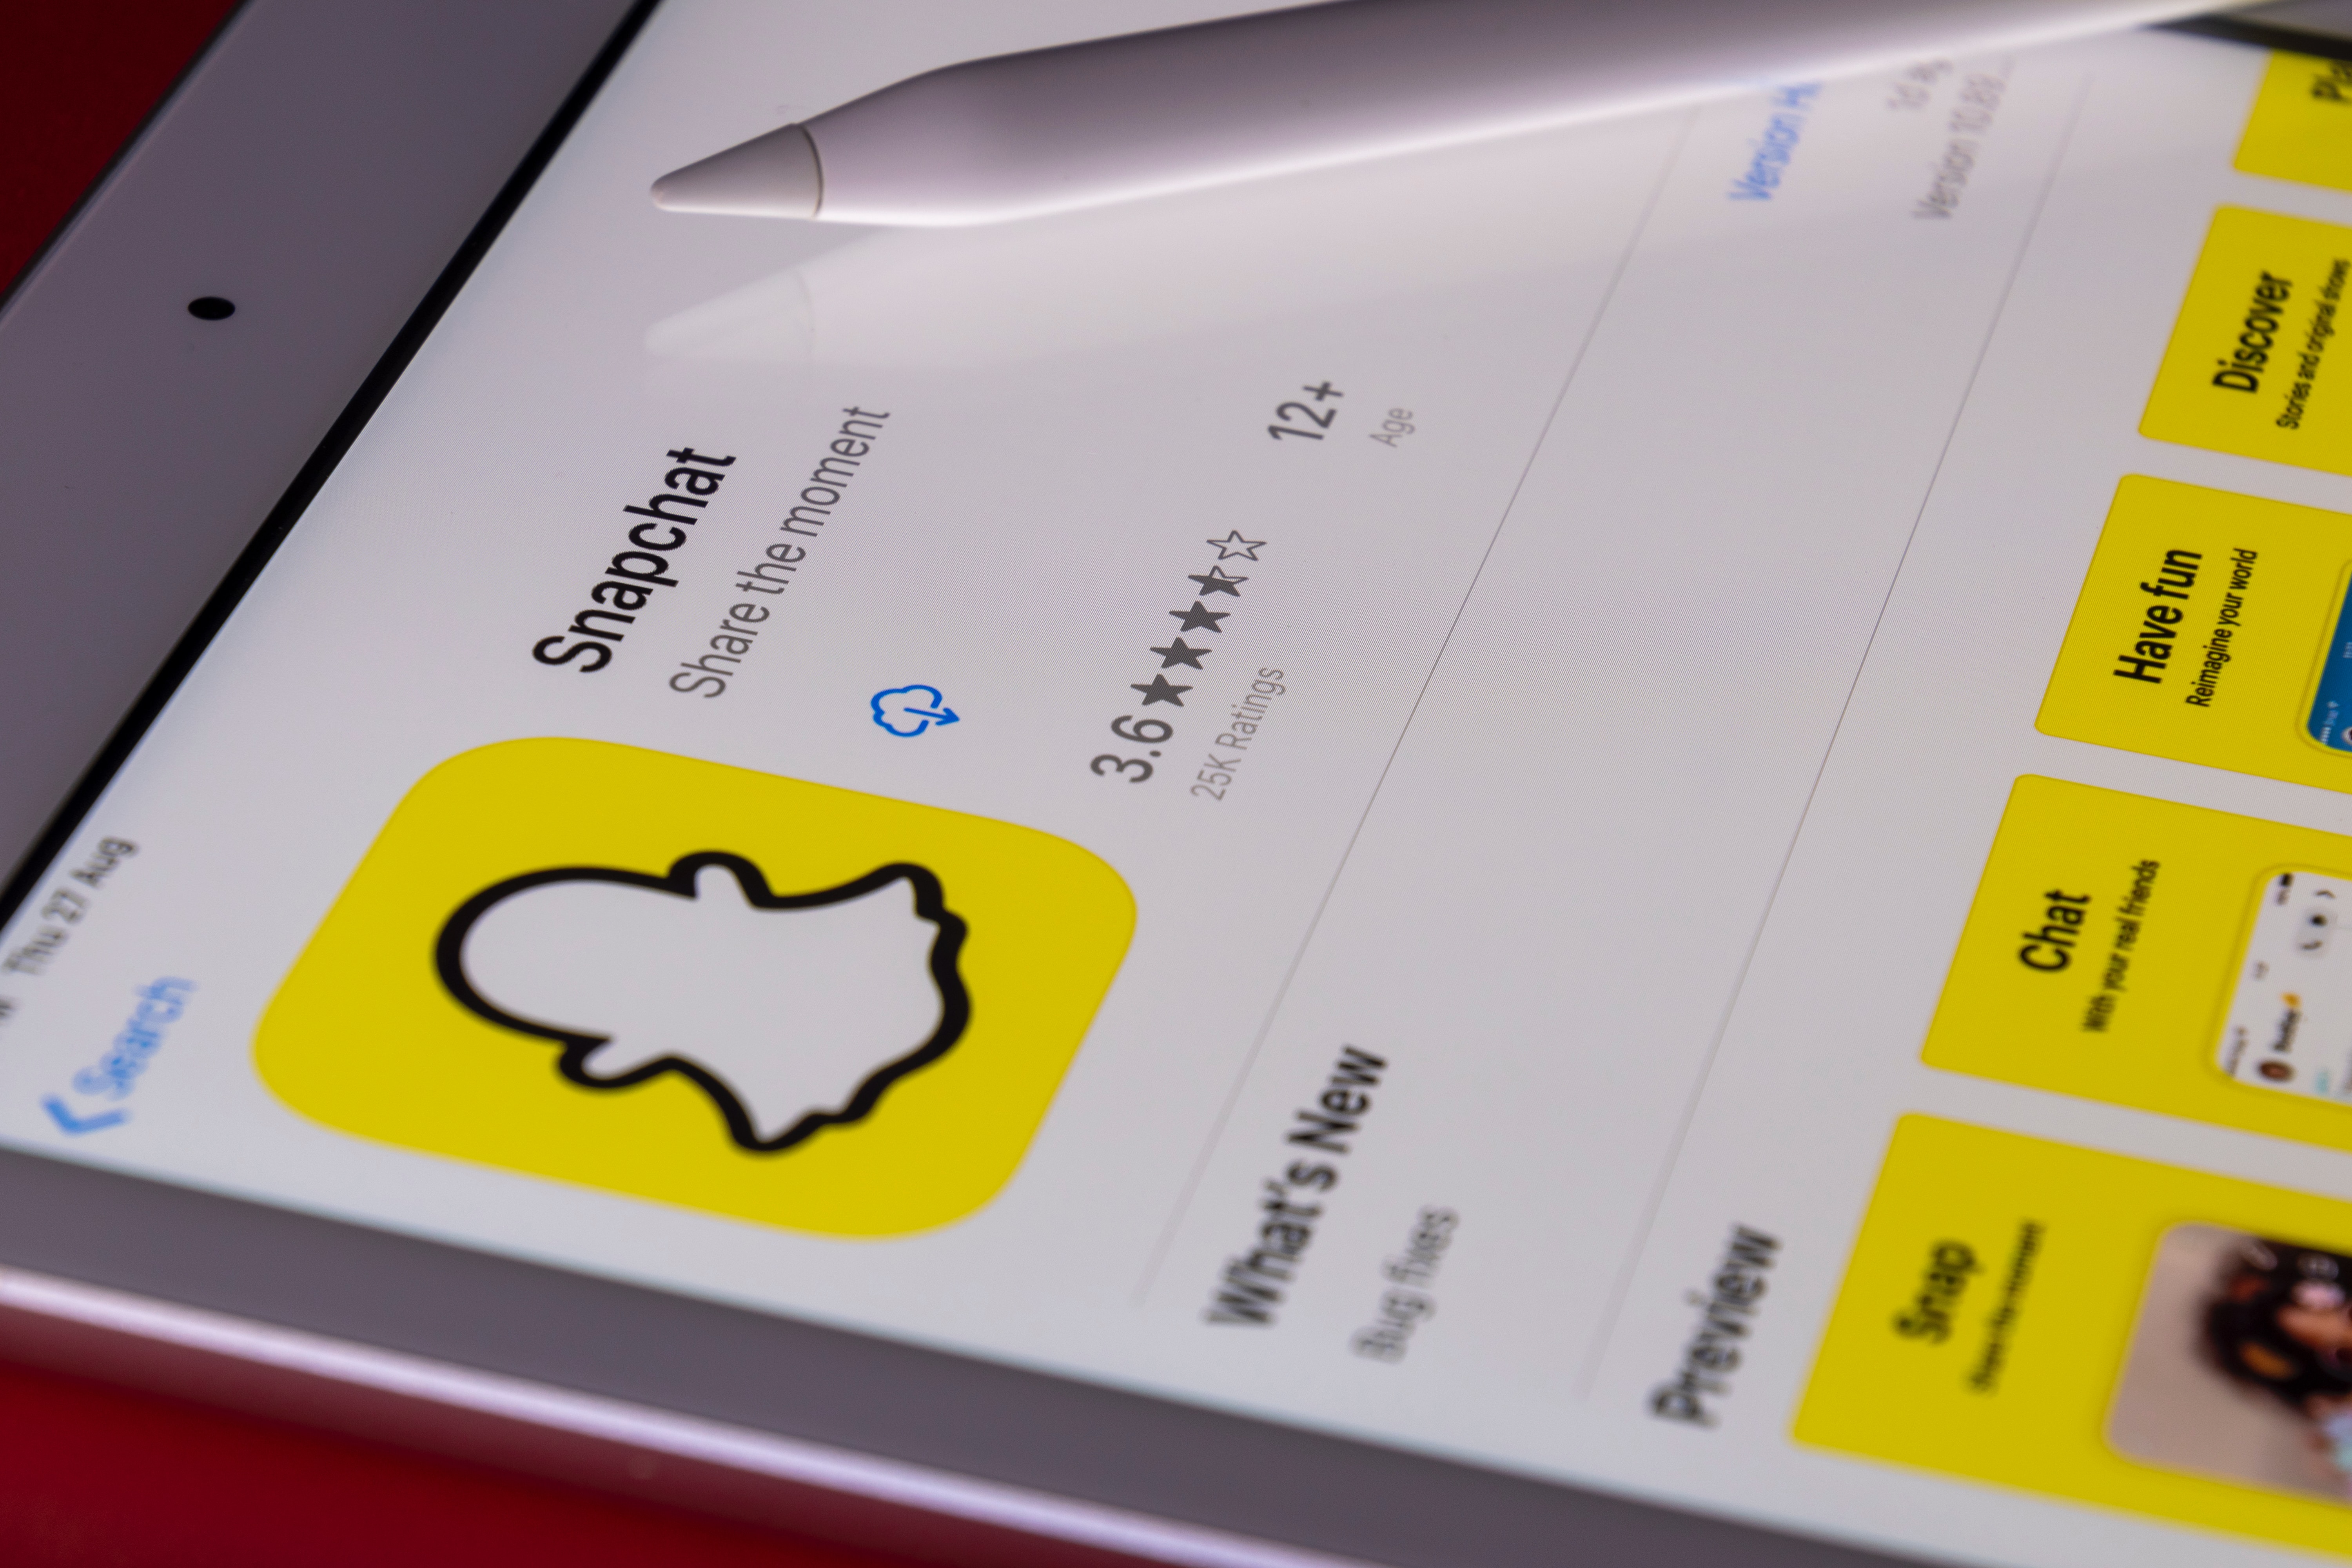 Storbritannien utreder Snapchat-chattbot på grund av integritetsrisker för tonåringar